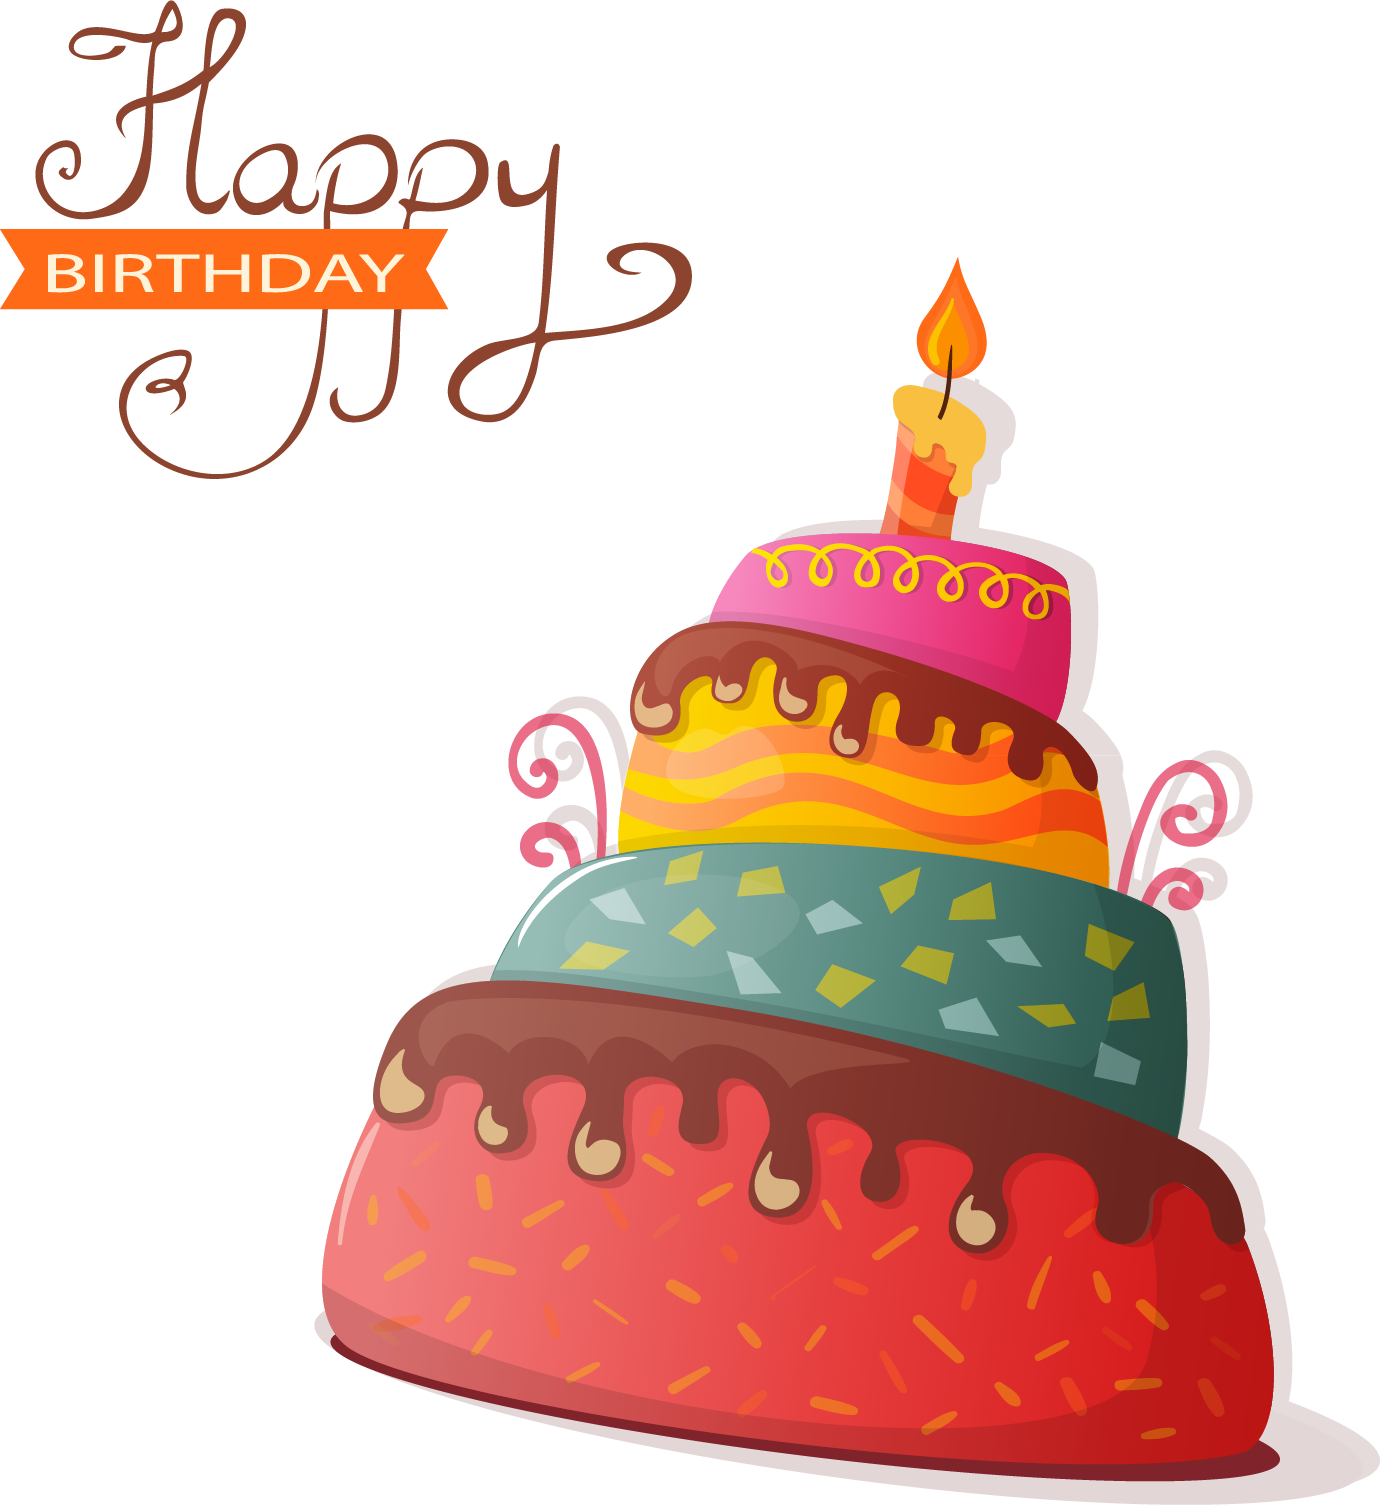 Cake Birthday Free Download Image PNG Image